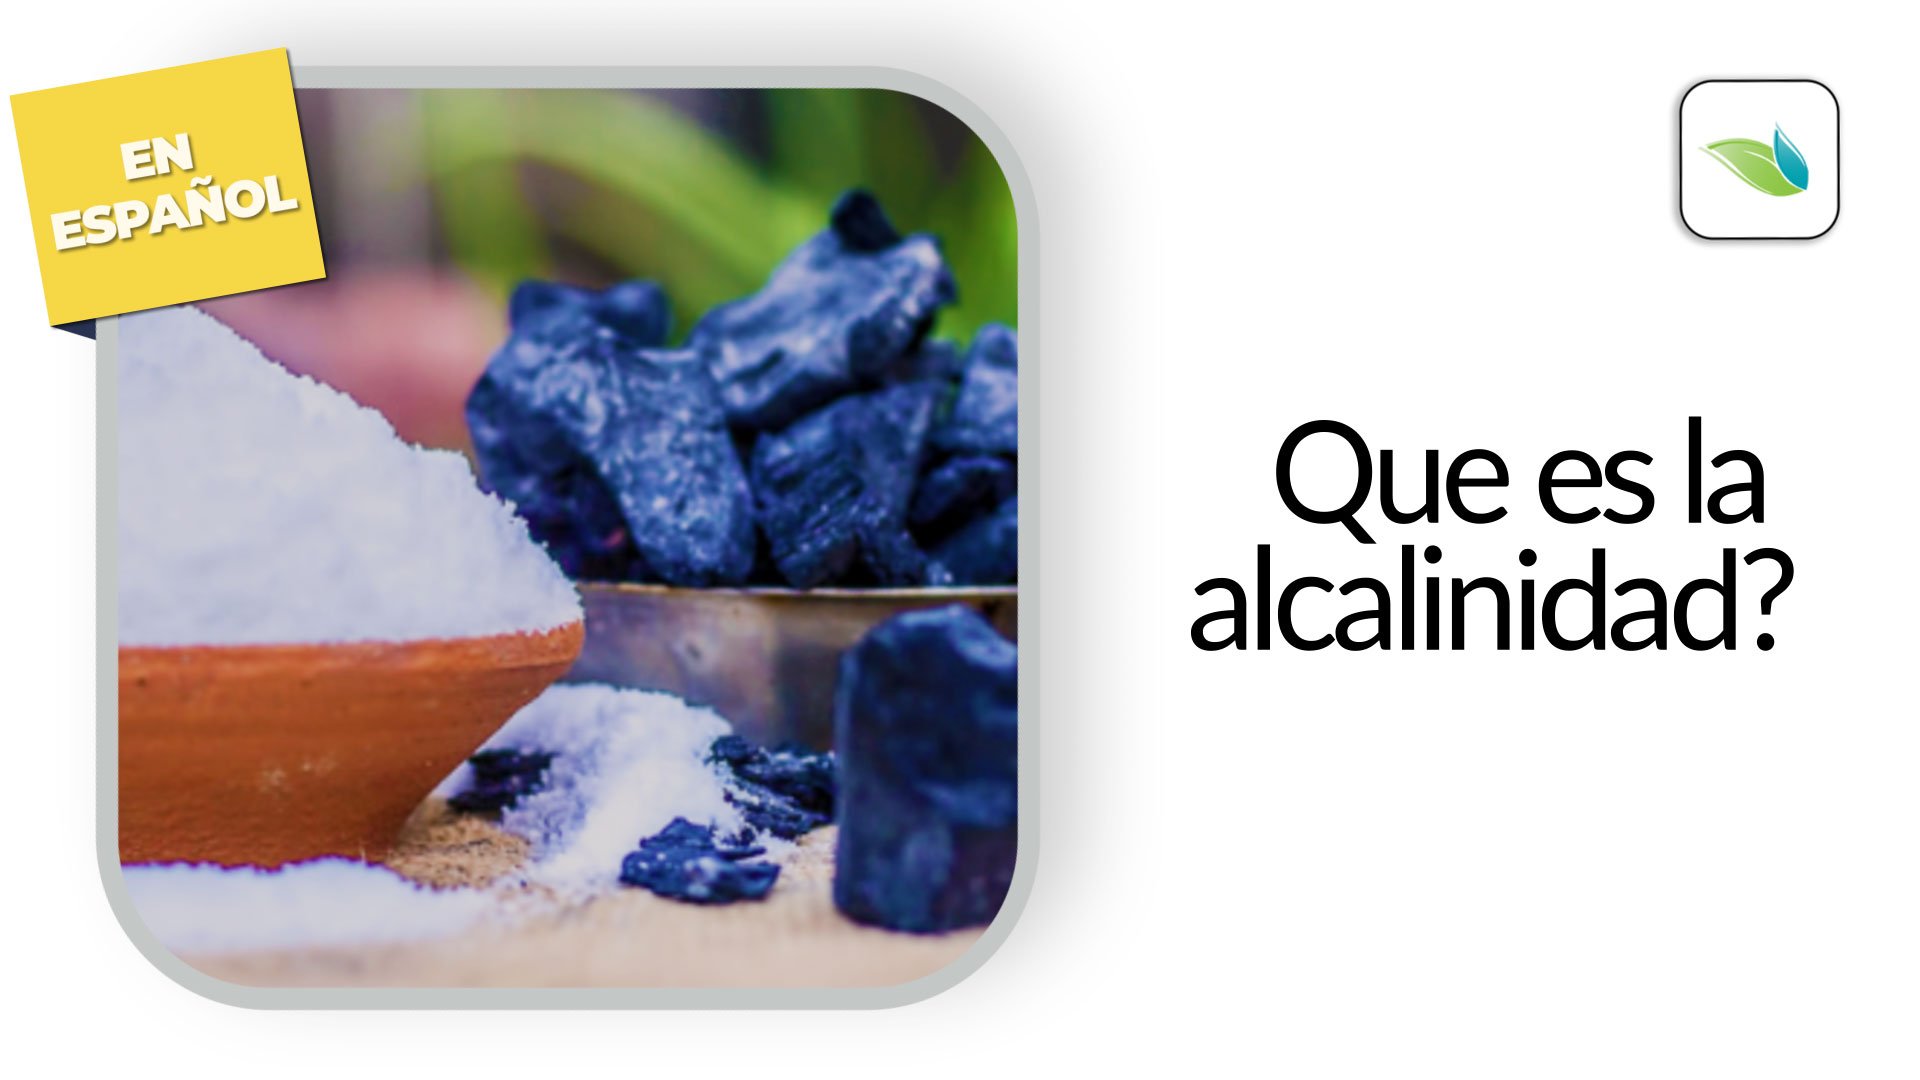 Que es alcalinidad?